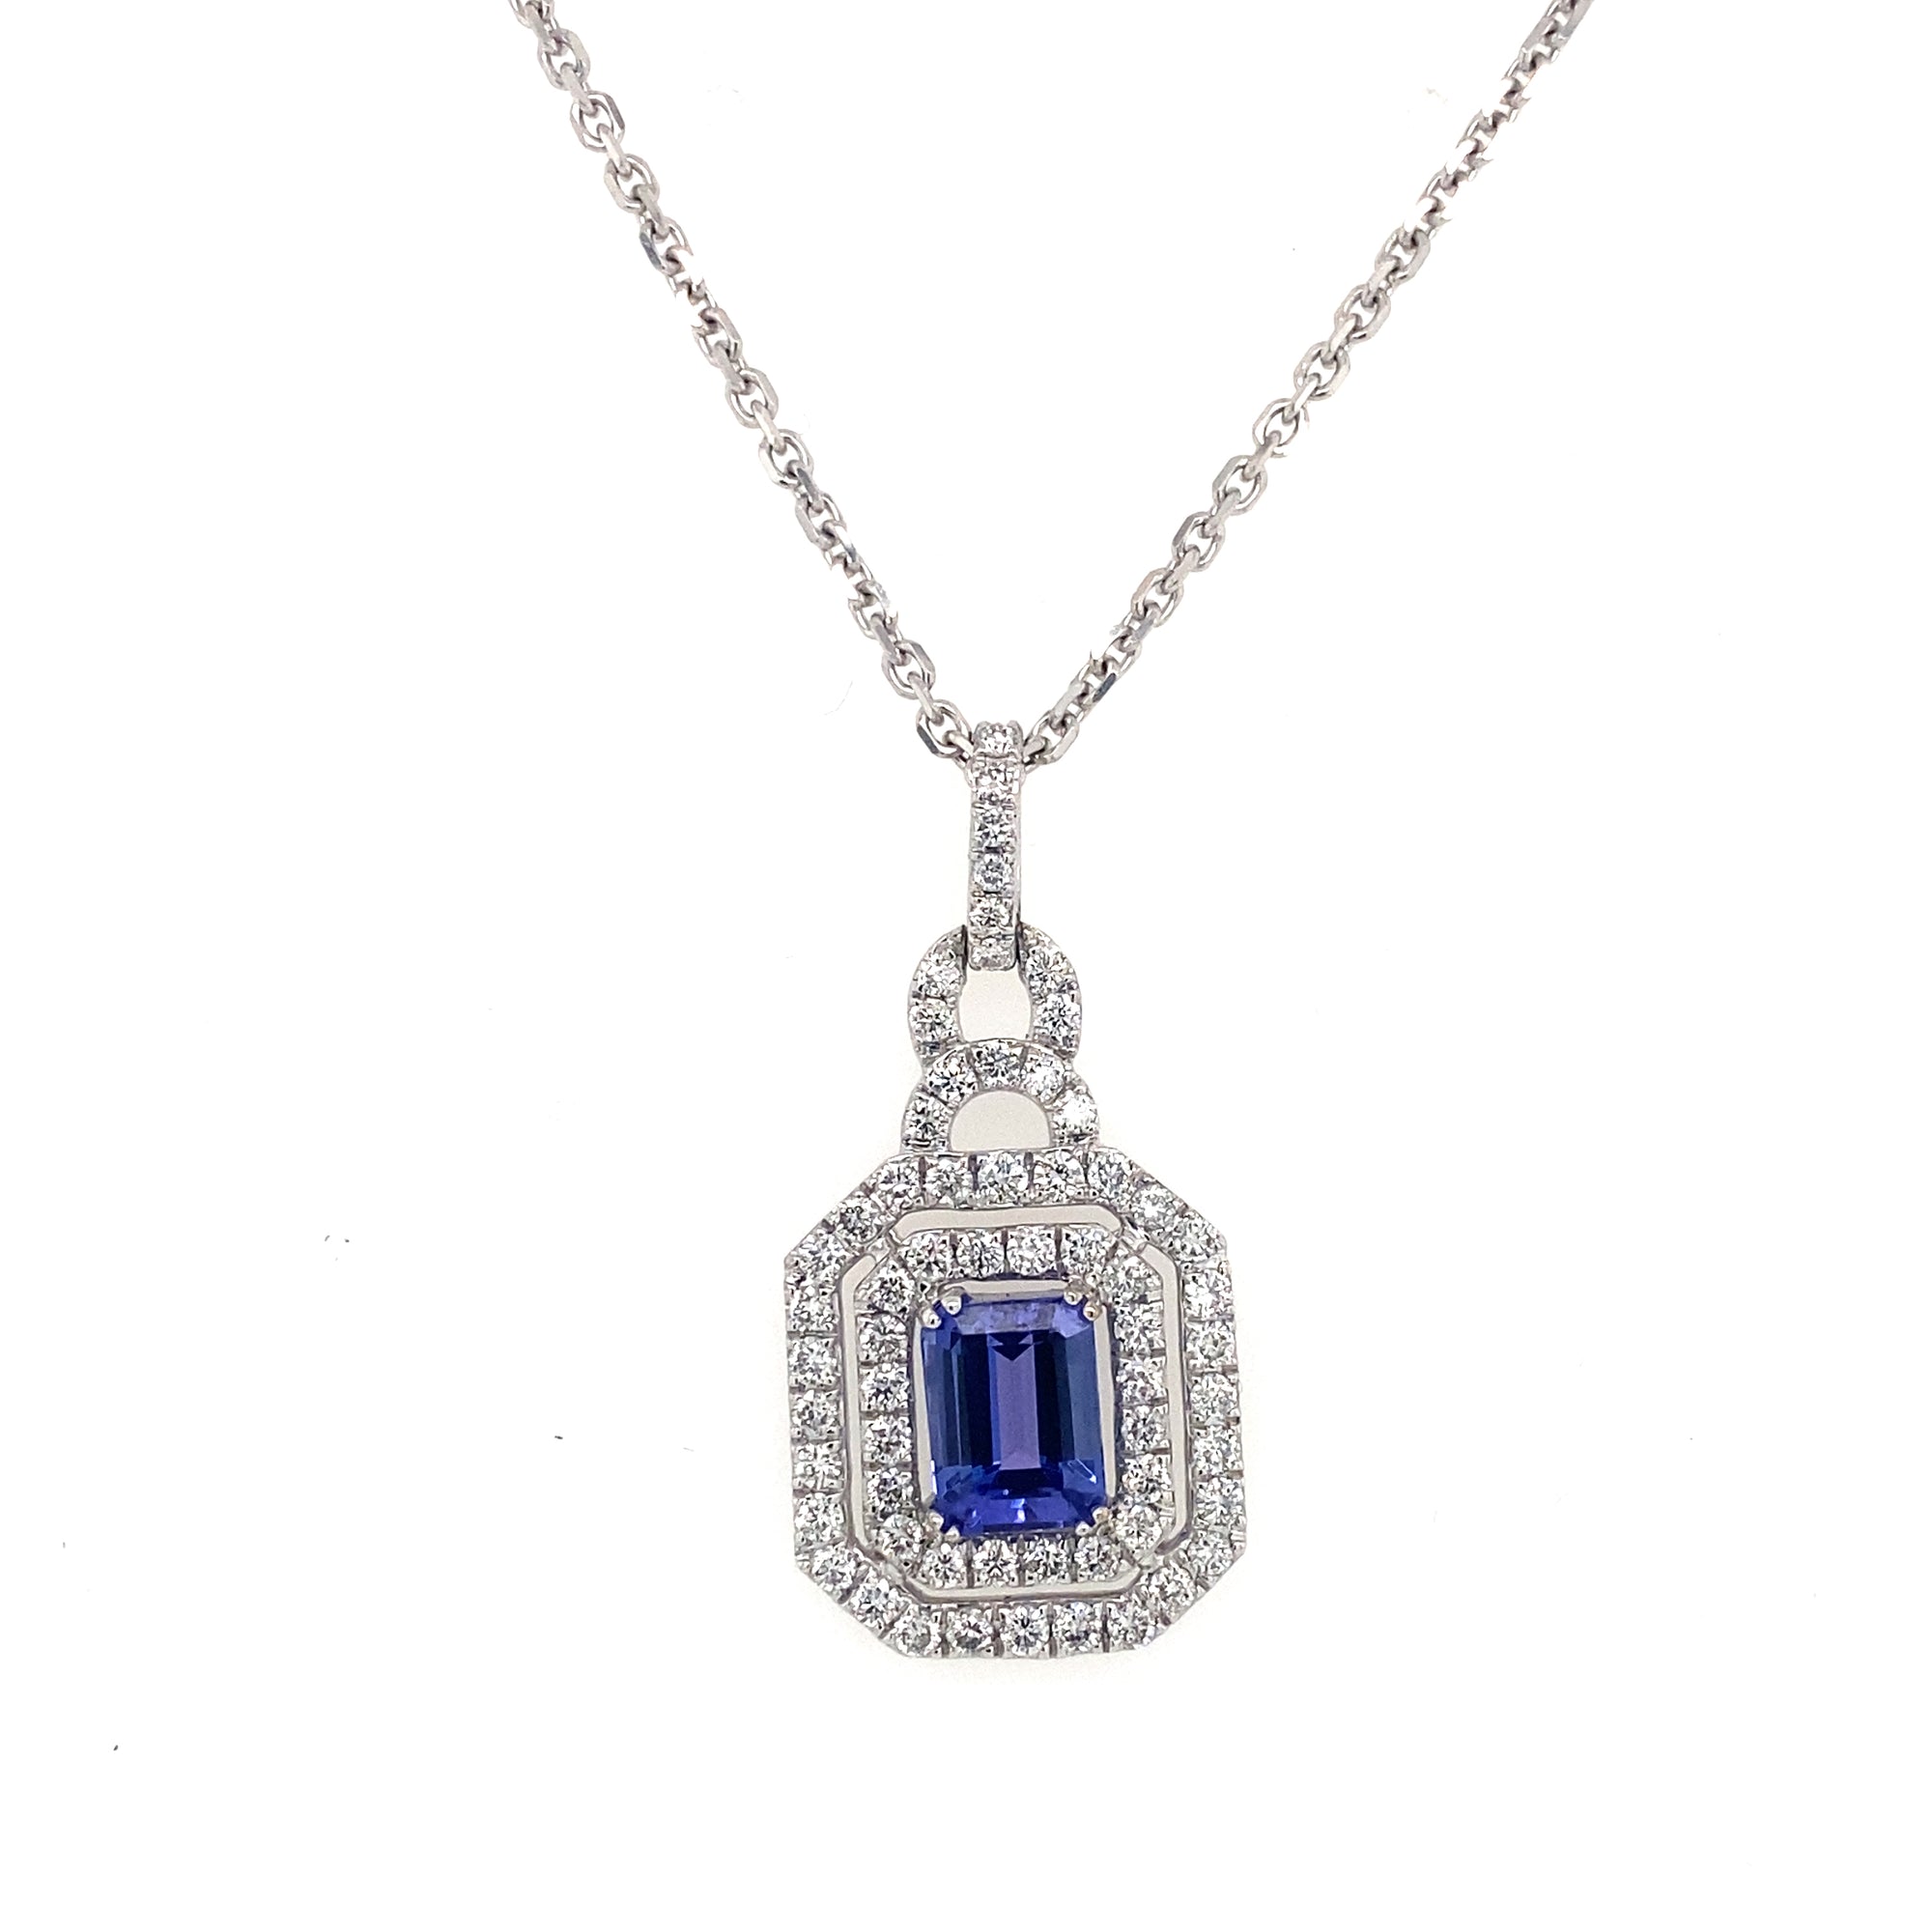 14K White Gold Emerald Cut Tanzanite & Diamond Necklace